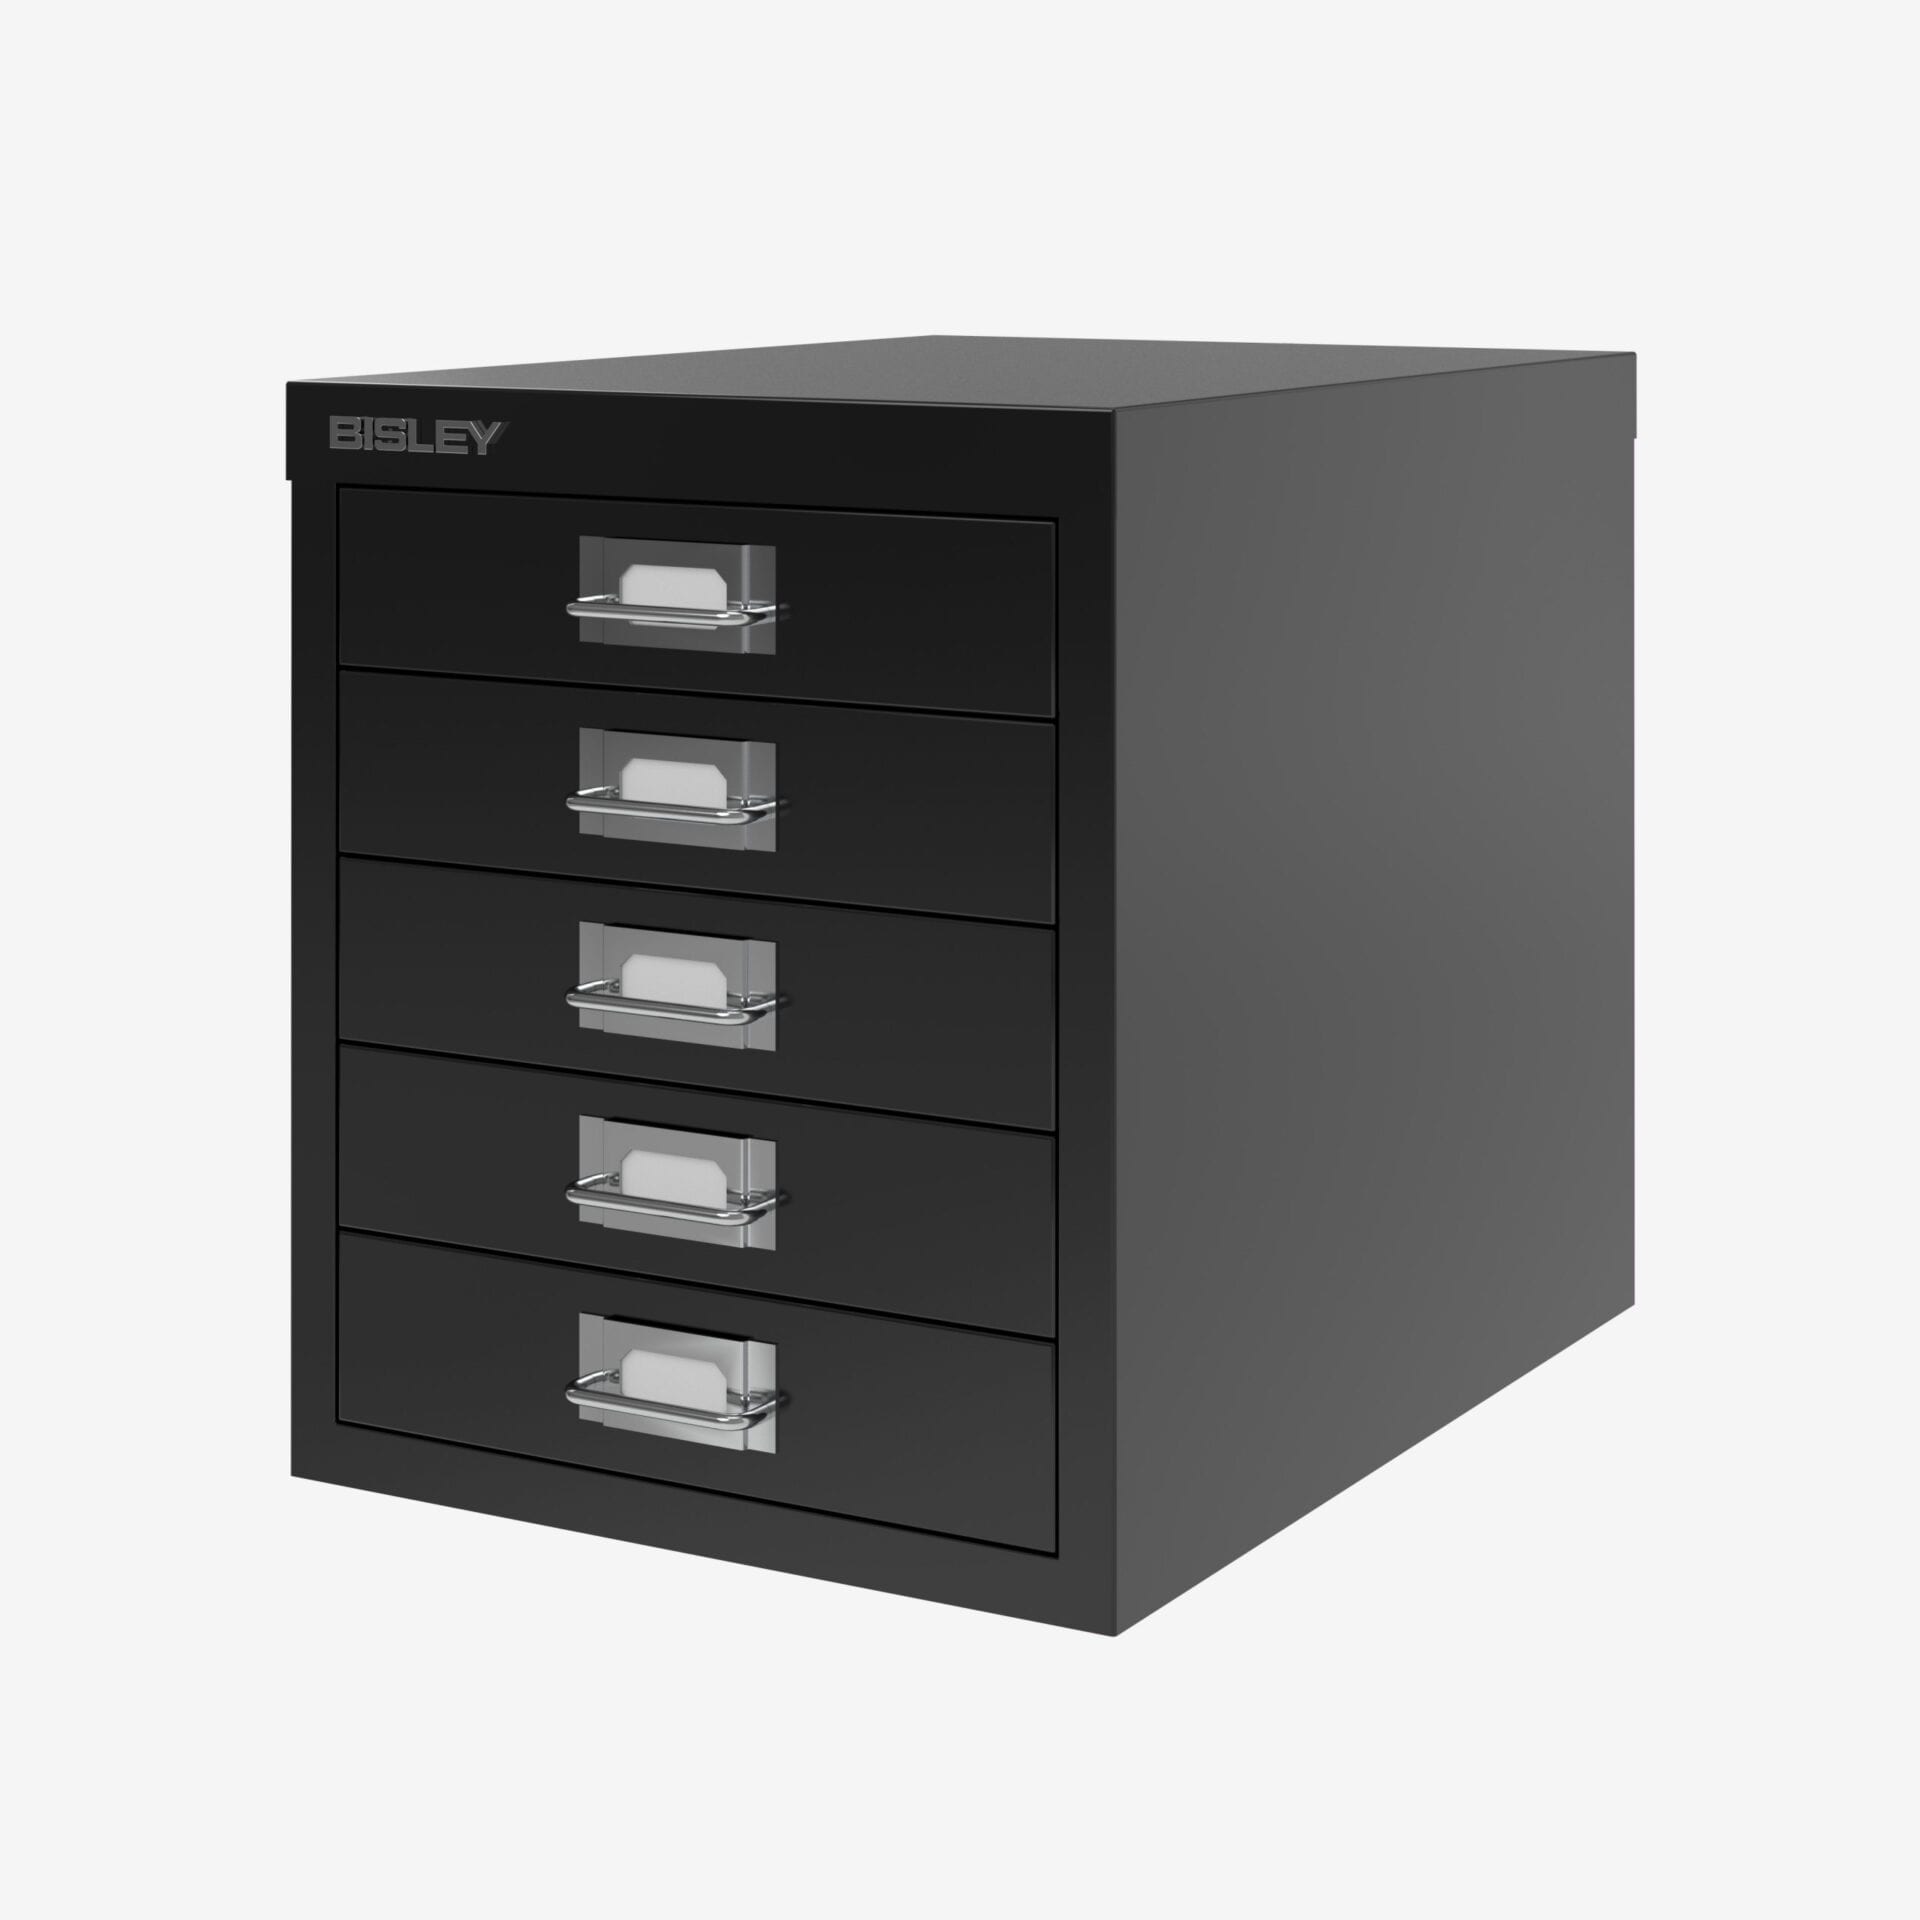 Bisley 5 Drawer Steel Desktop Multidrawer Storage Cabinet, Light Gray  (MD5-LG)